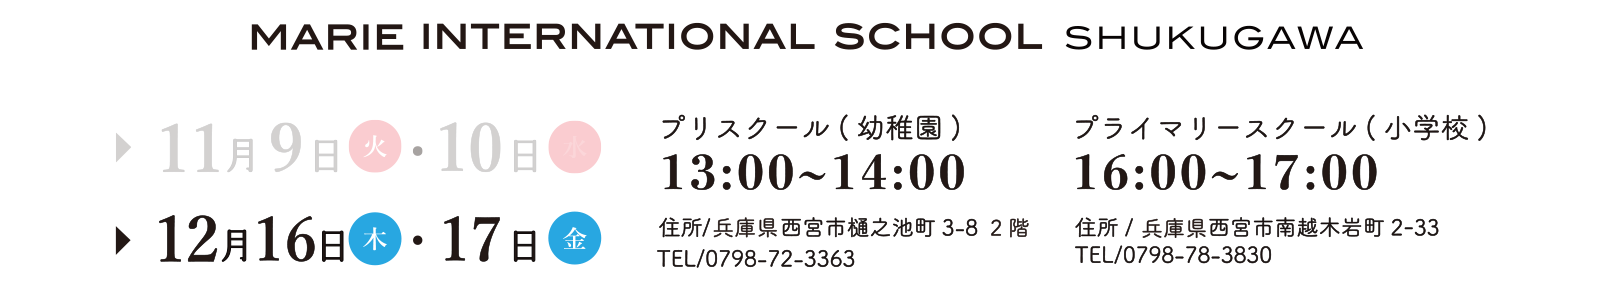 Shukugawa Orientation Dates